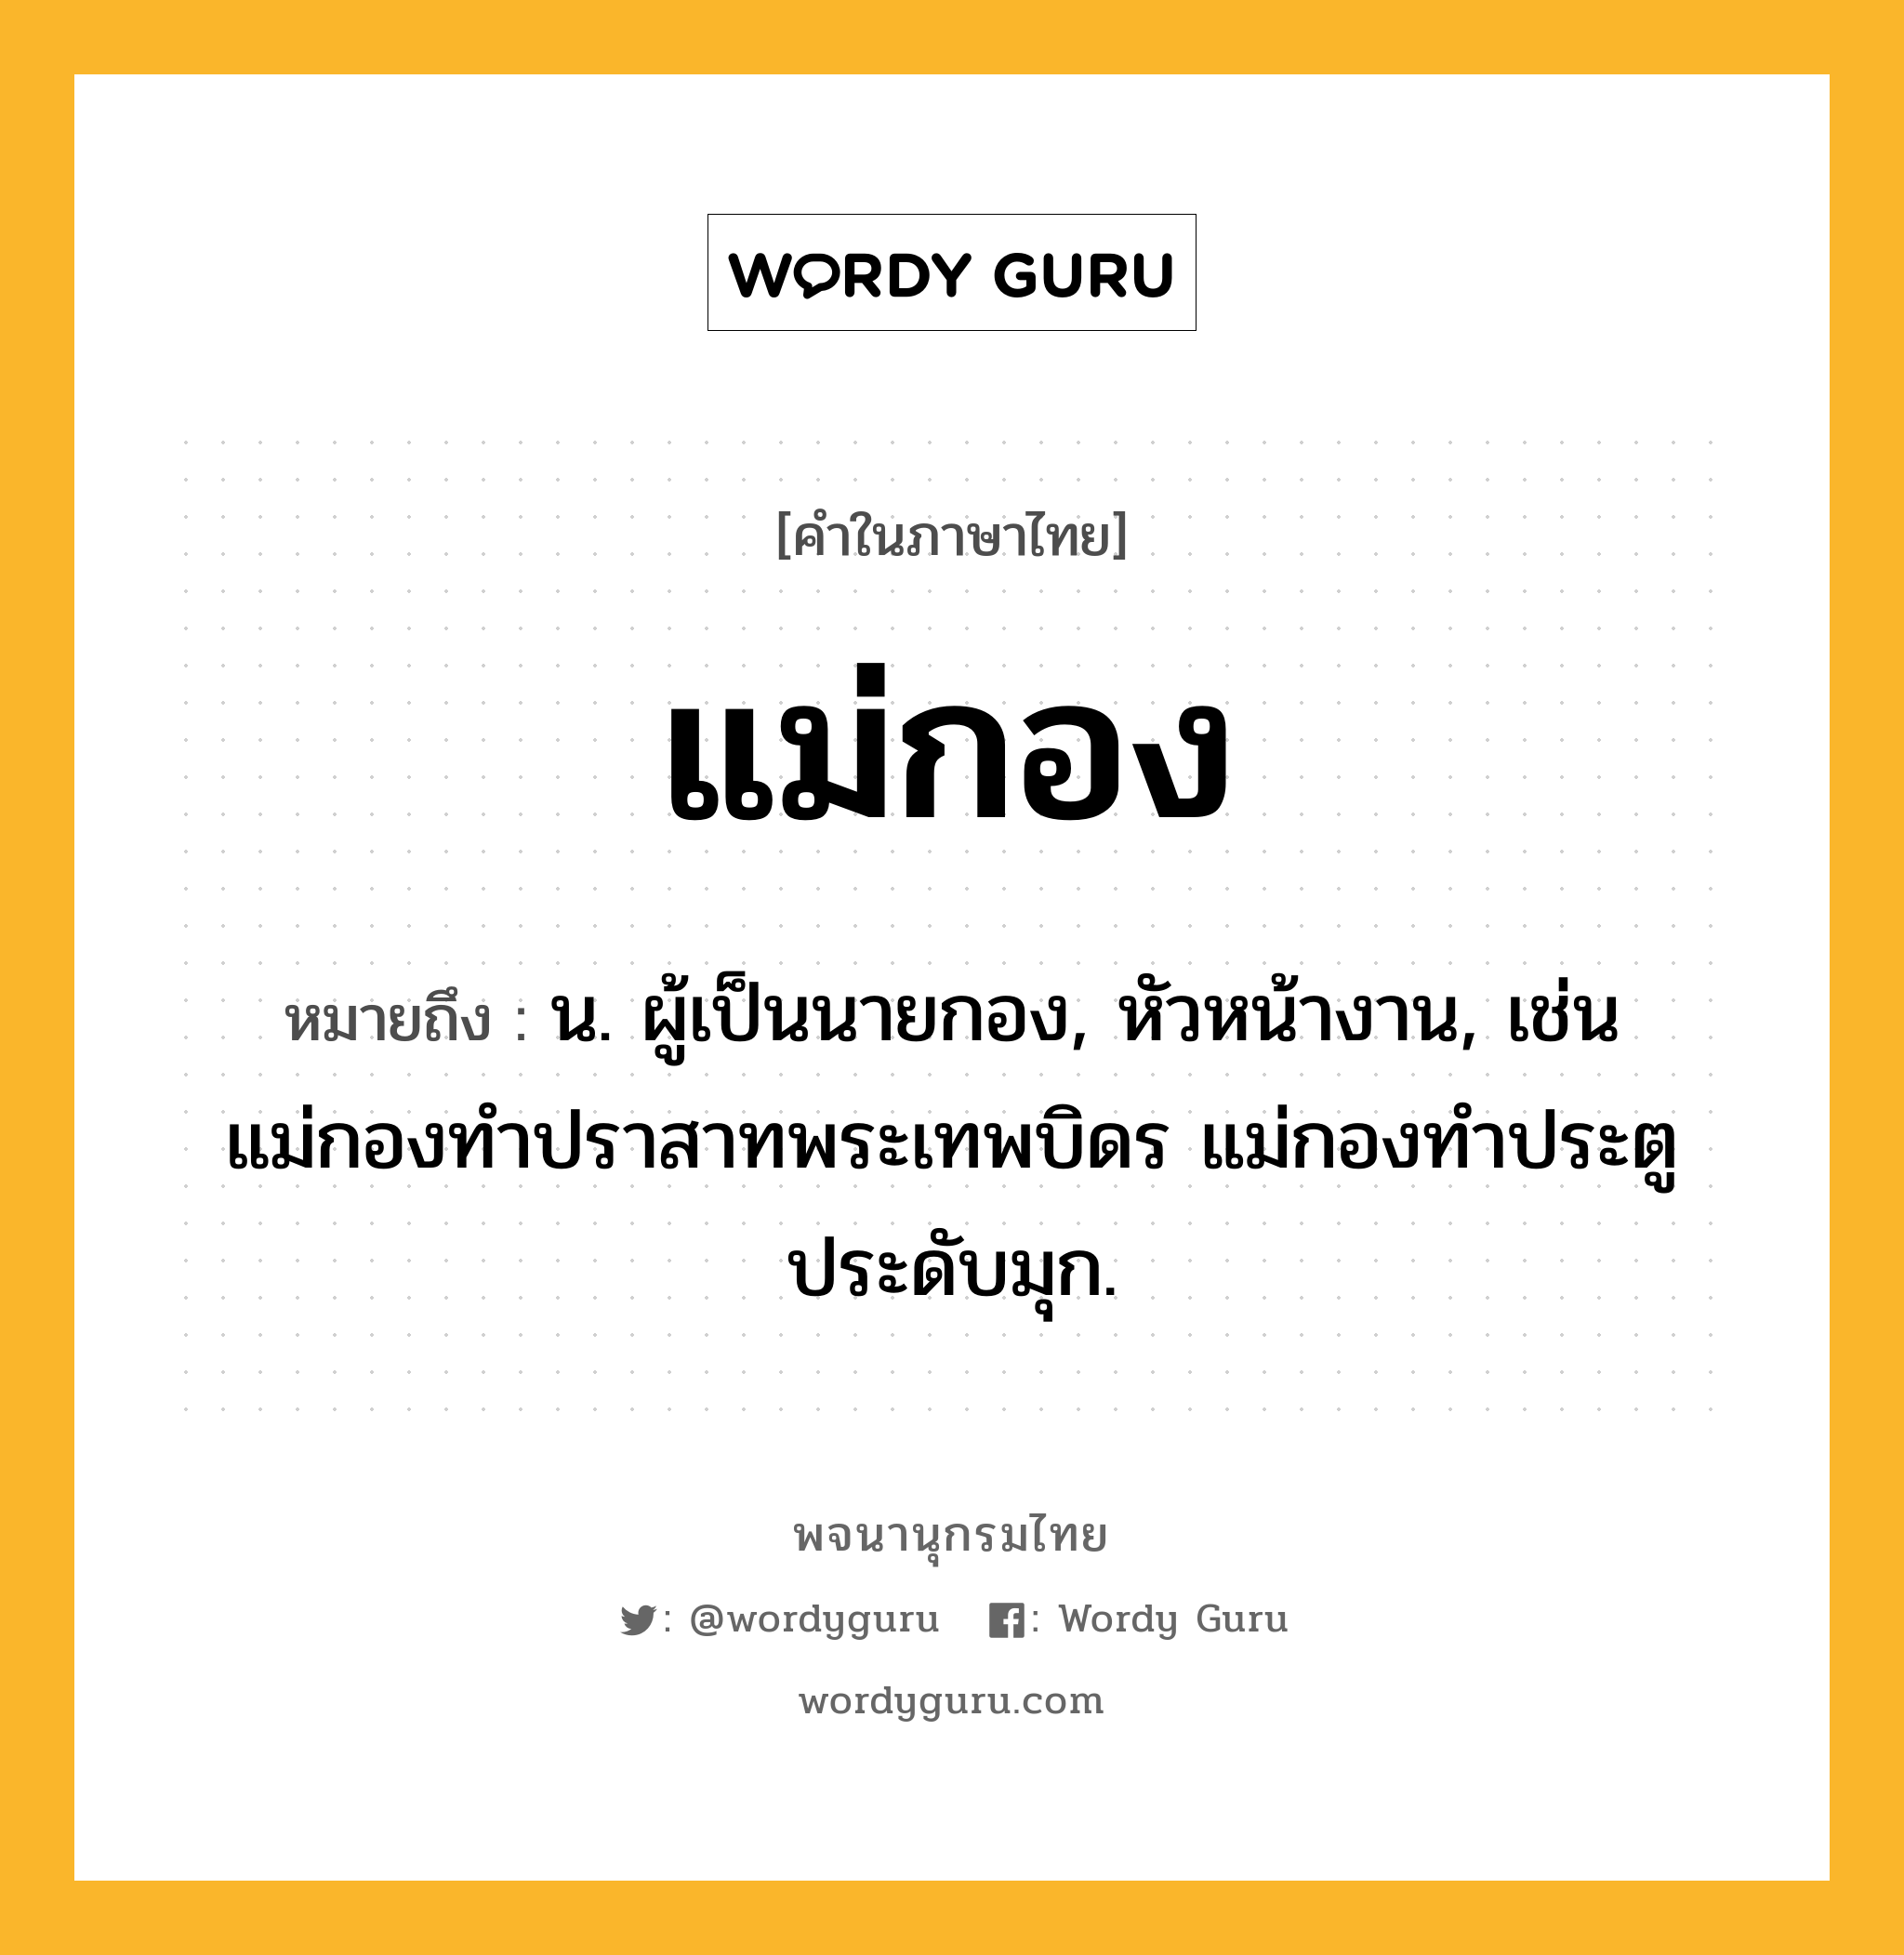 แม่กอง ความหมาย หมายถึงอะไร?, คำในภาษาไทย แม่กอง หมายถึง น. ผู้เป็นนายกอง, หัวหน้างาน, เช่น แม่กองทำปราสาทพระเทพบิดร แม่กองทำประตูประดับมุก.